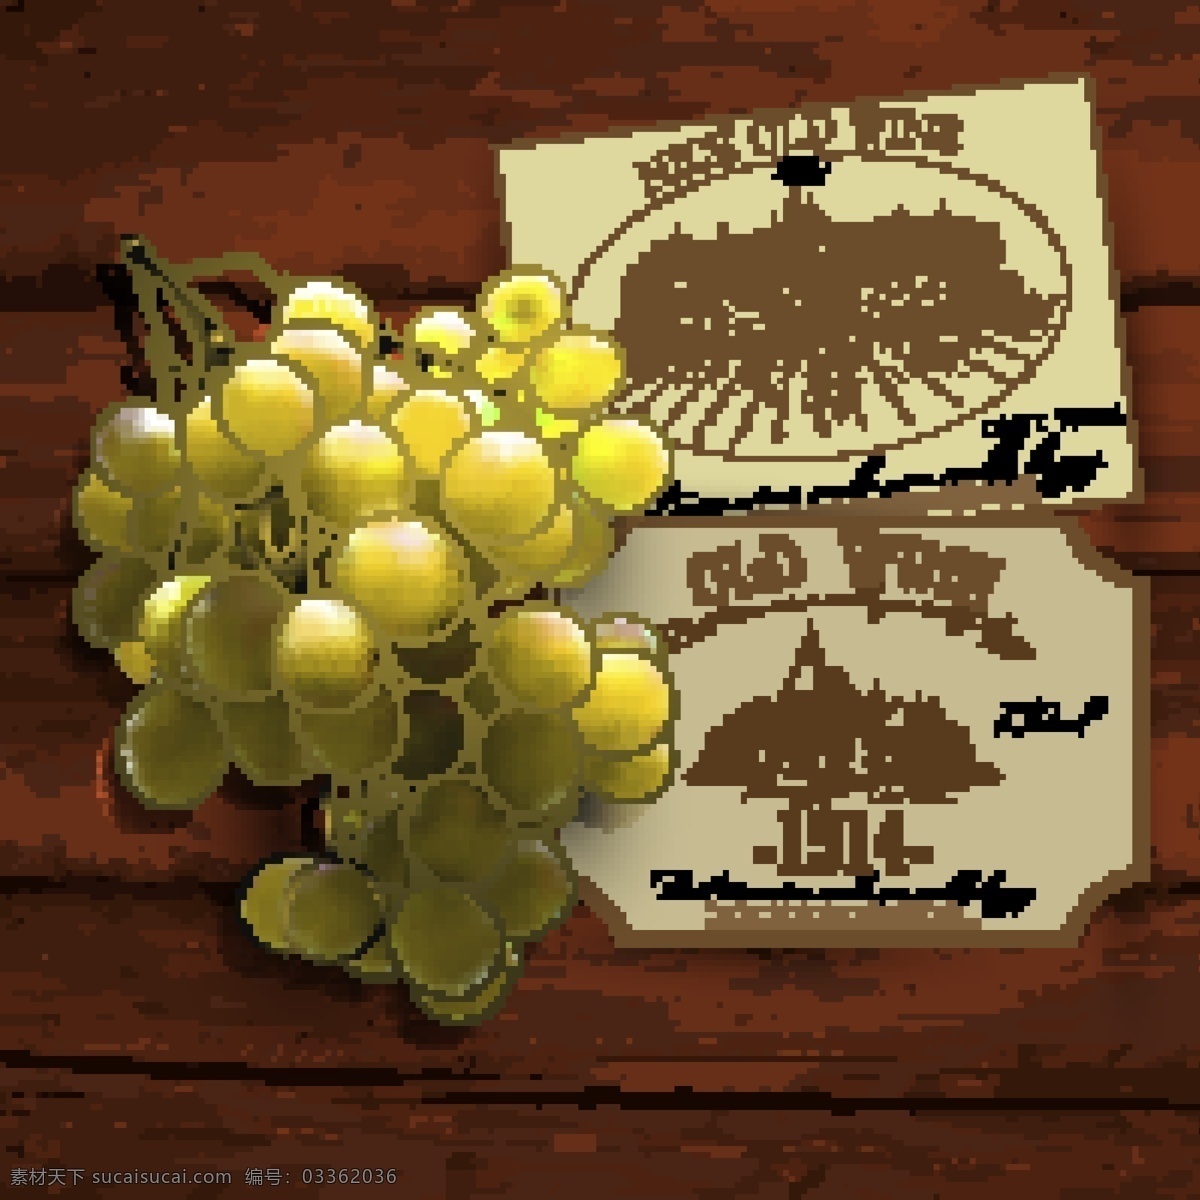 绿色 葡萄 串 葡萄酒 商标 矢量图 木纹 水果 香槟酒 标签 酒庄 木板